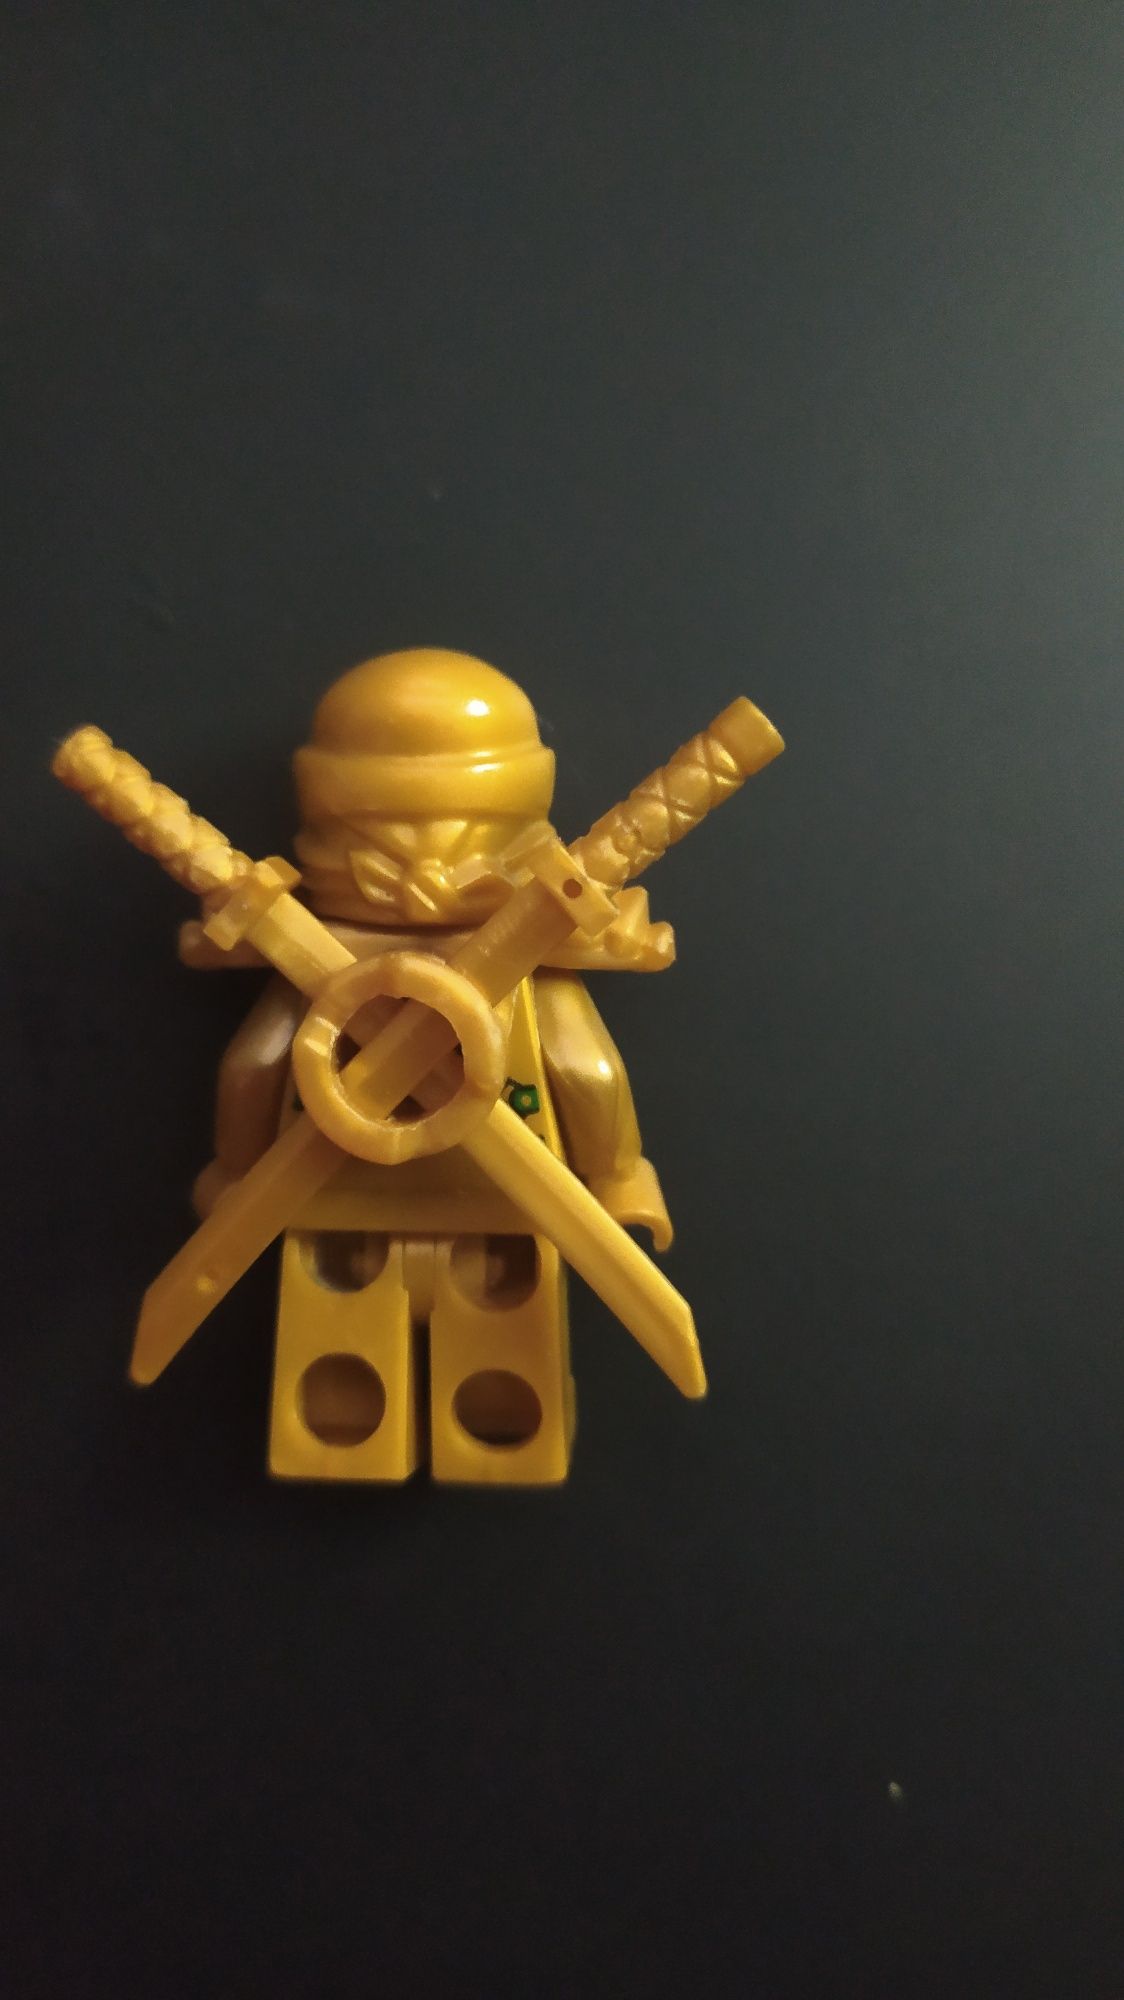 Złoty ninja LEGO ninjago figurka